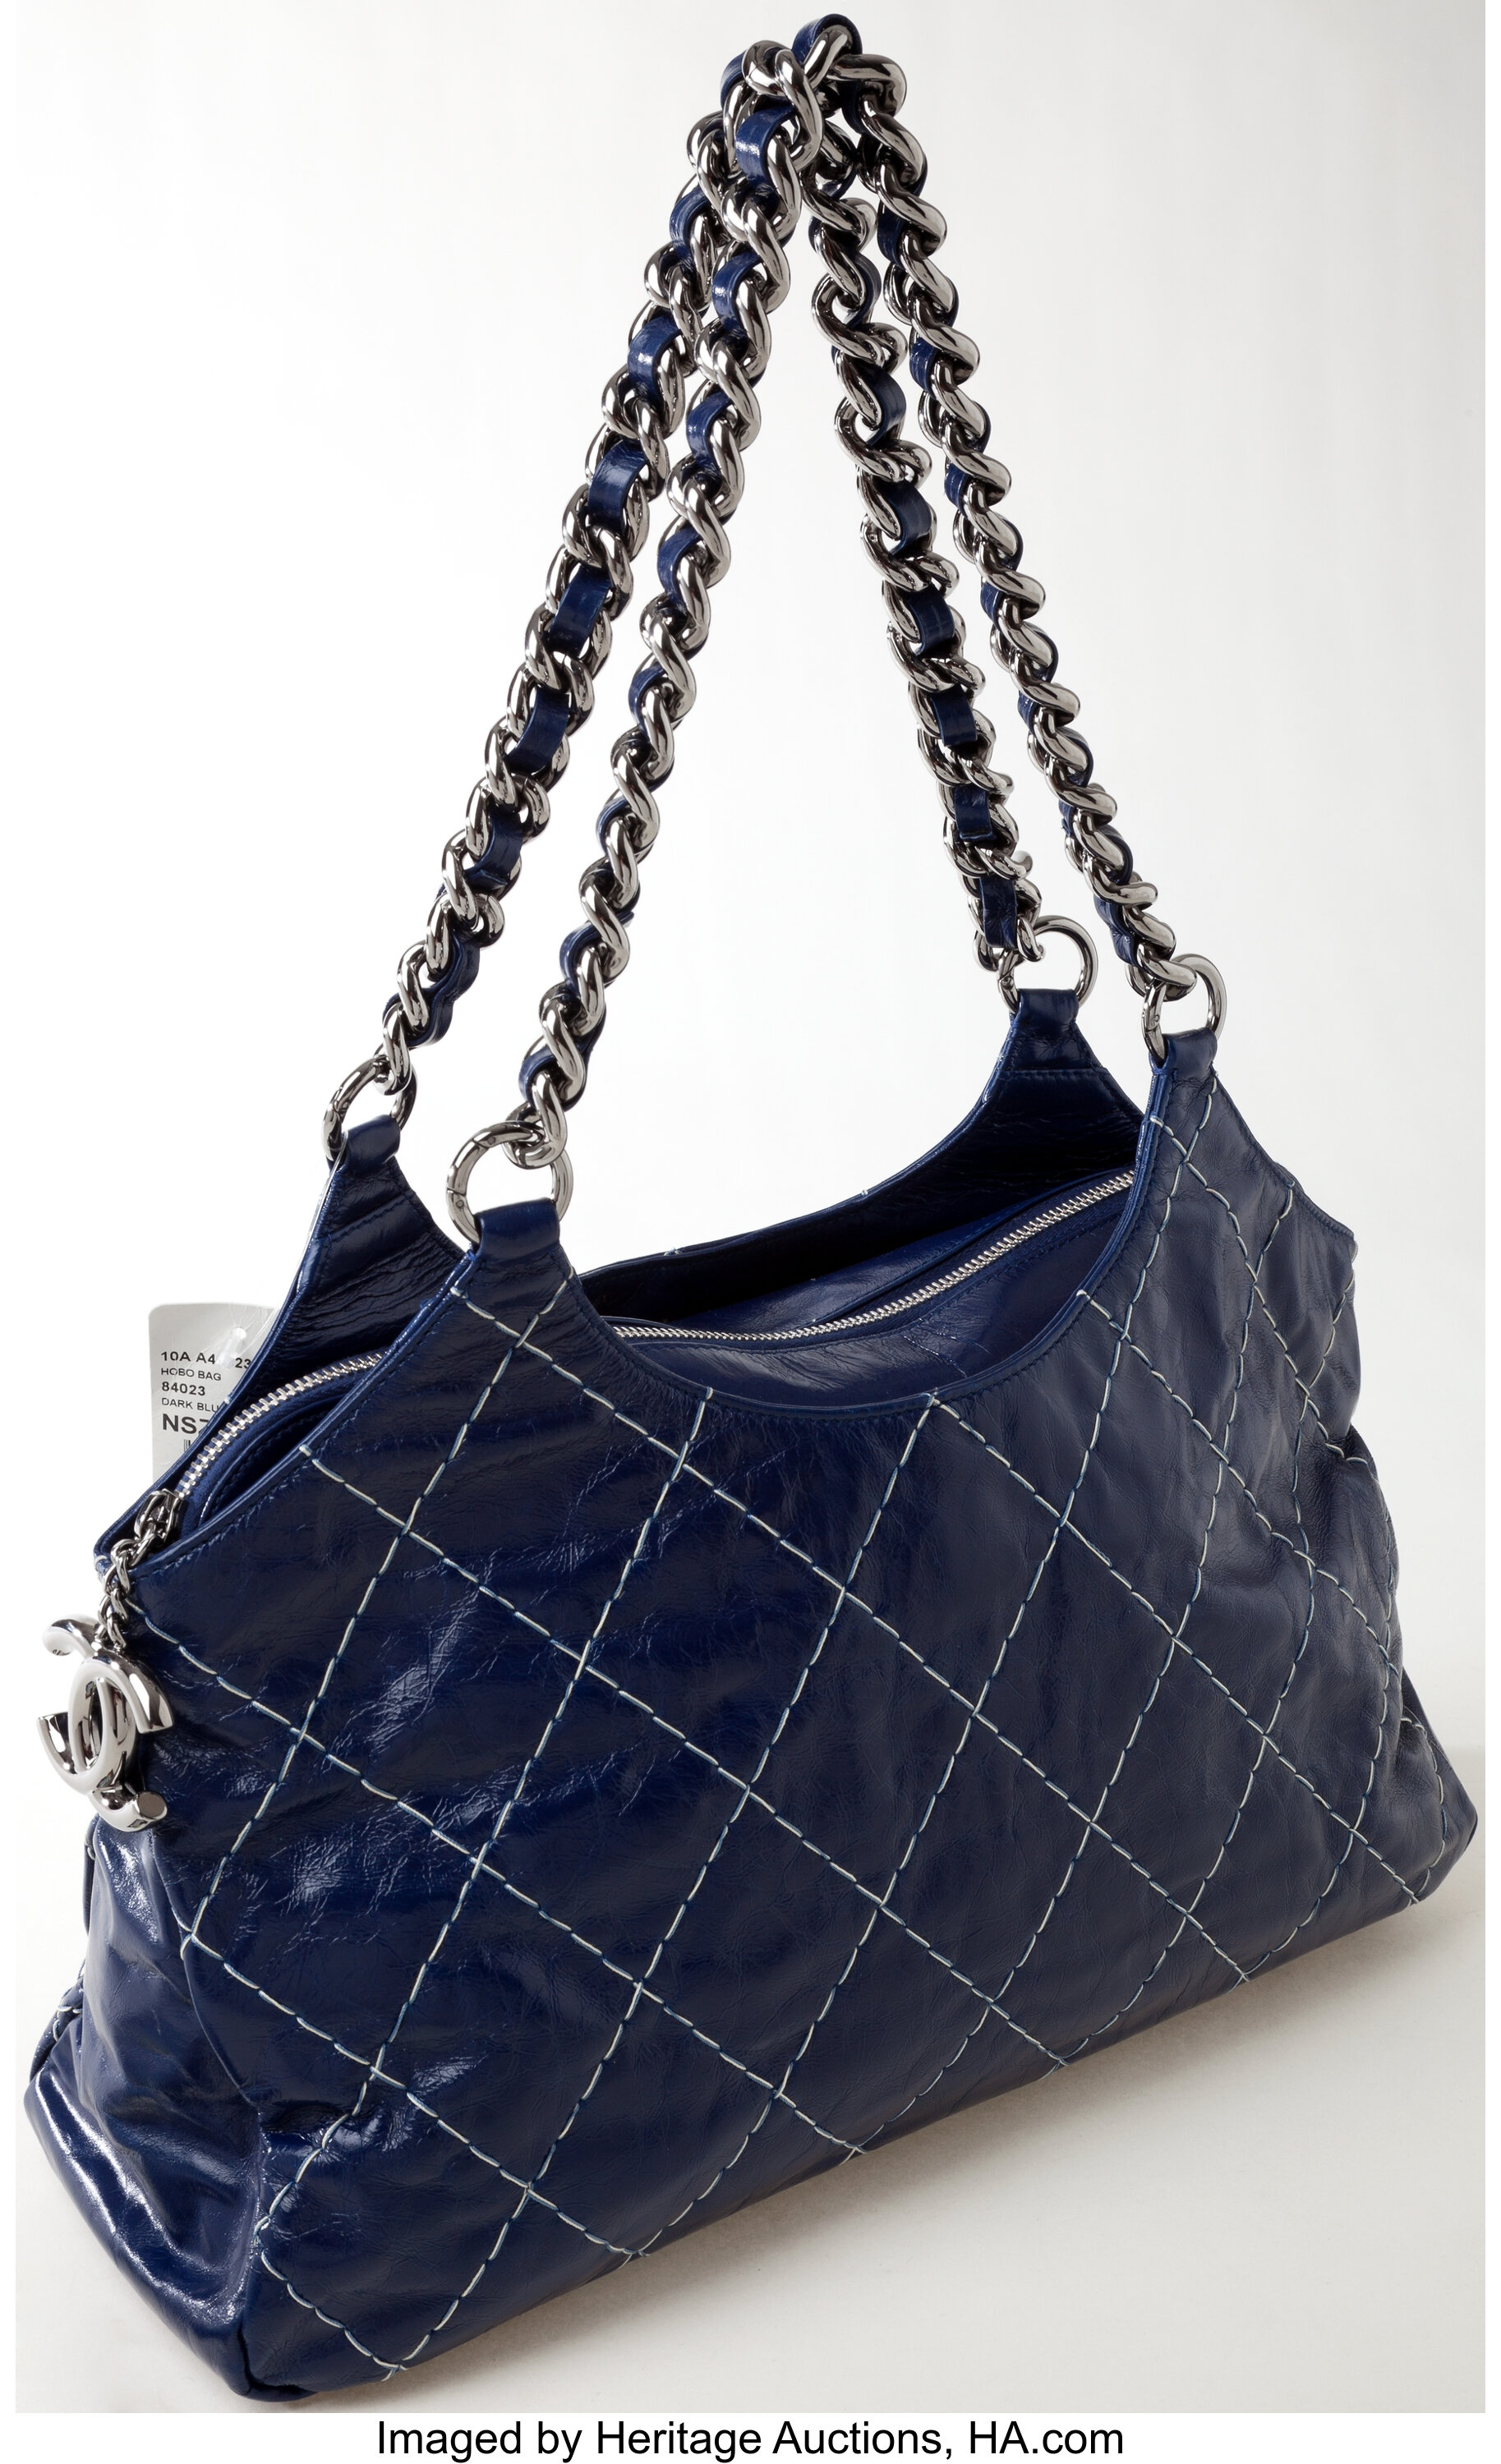 Heritage Vintage: Chanel Dark Blue Leather Shoulder Bag with Chain